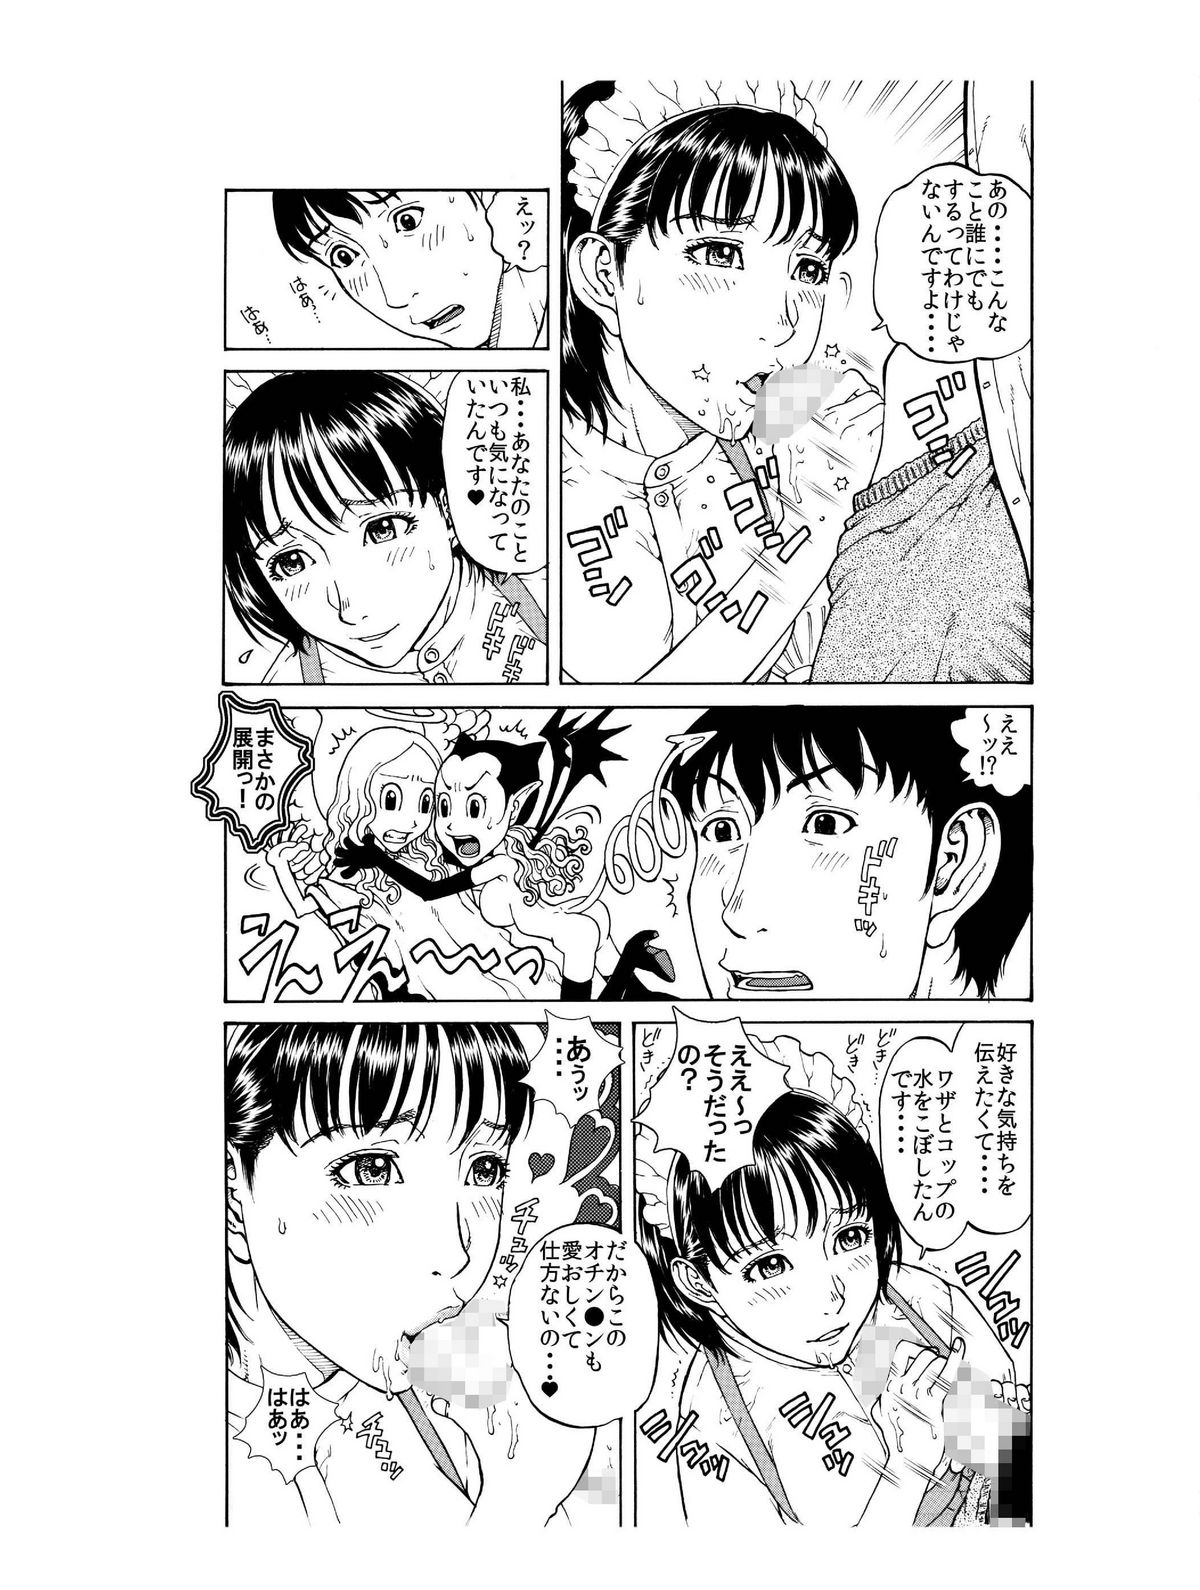 [艶色村役場すぐヤル課] 「あのメイド♀は俺だけのモノ!」 page 10 full